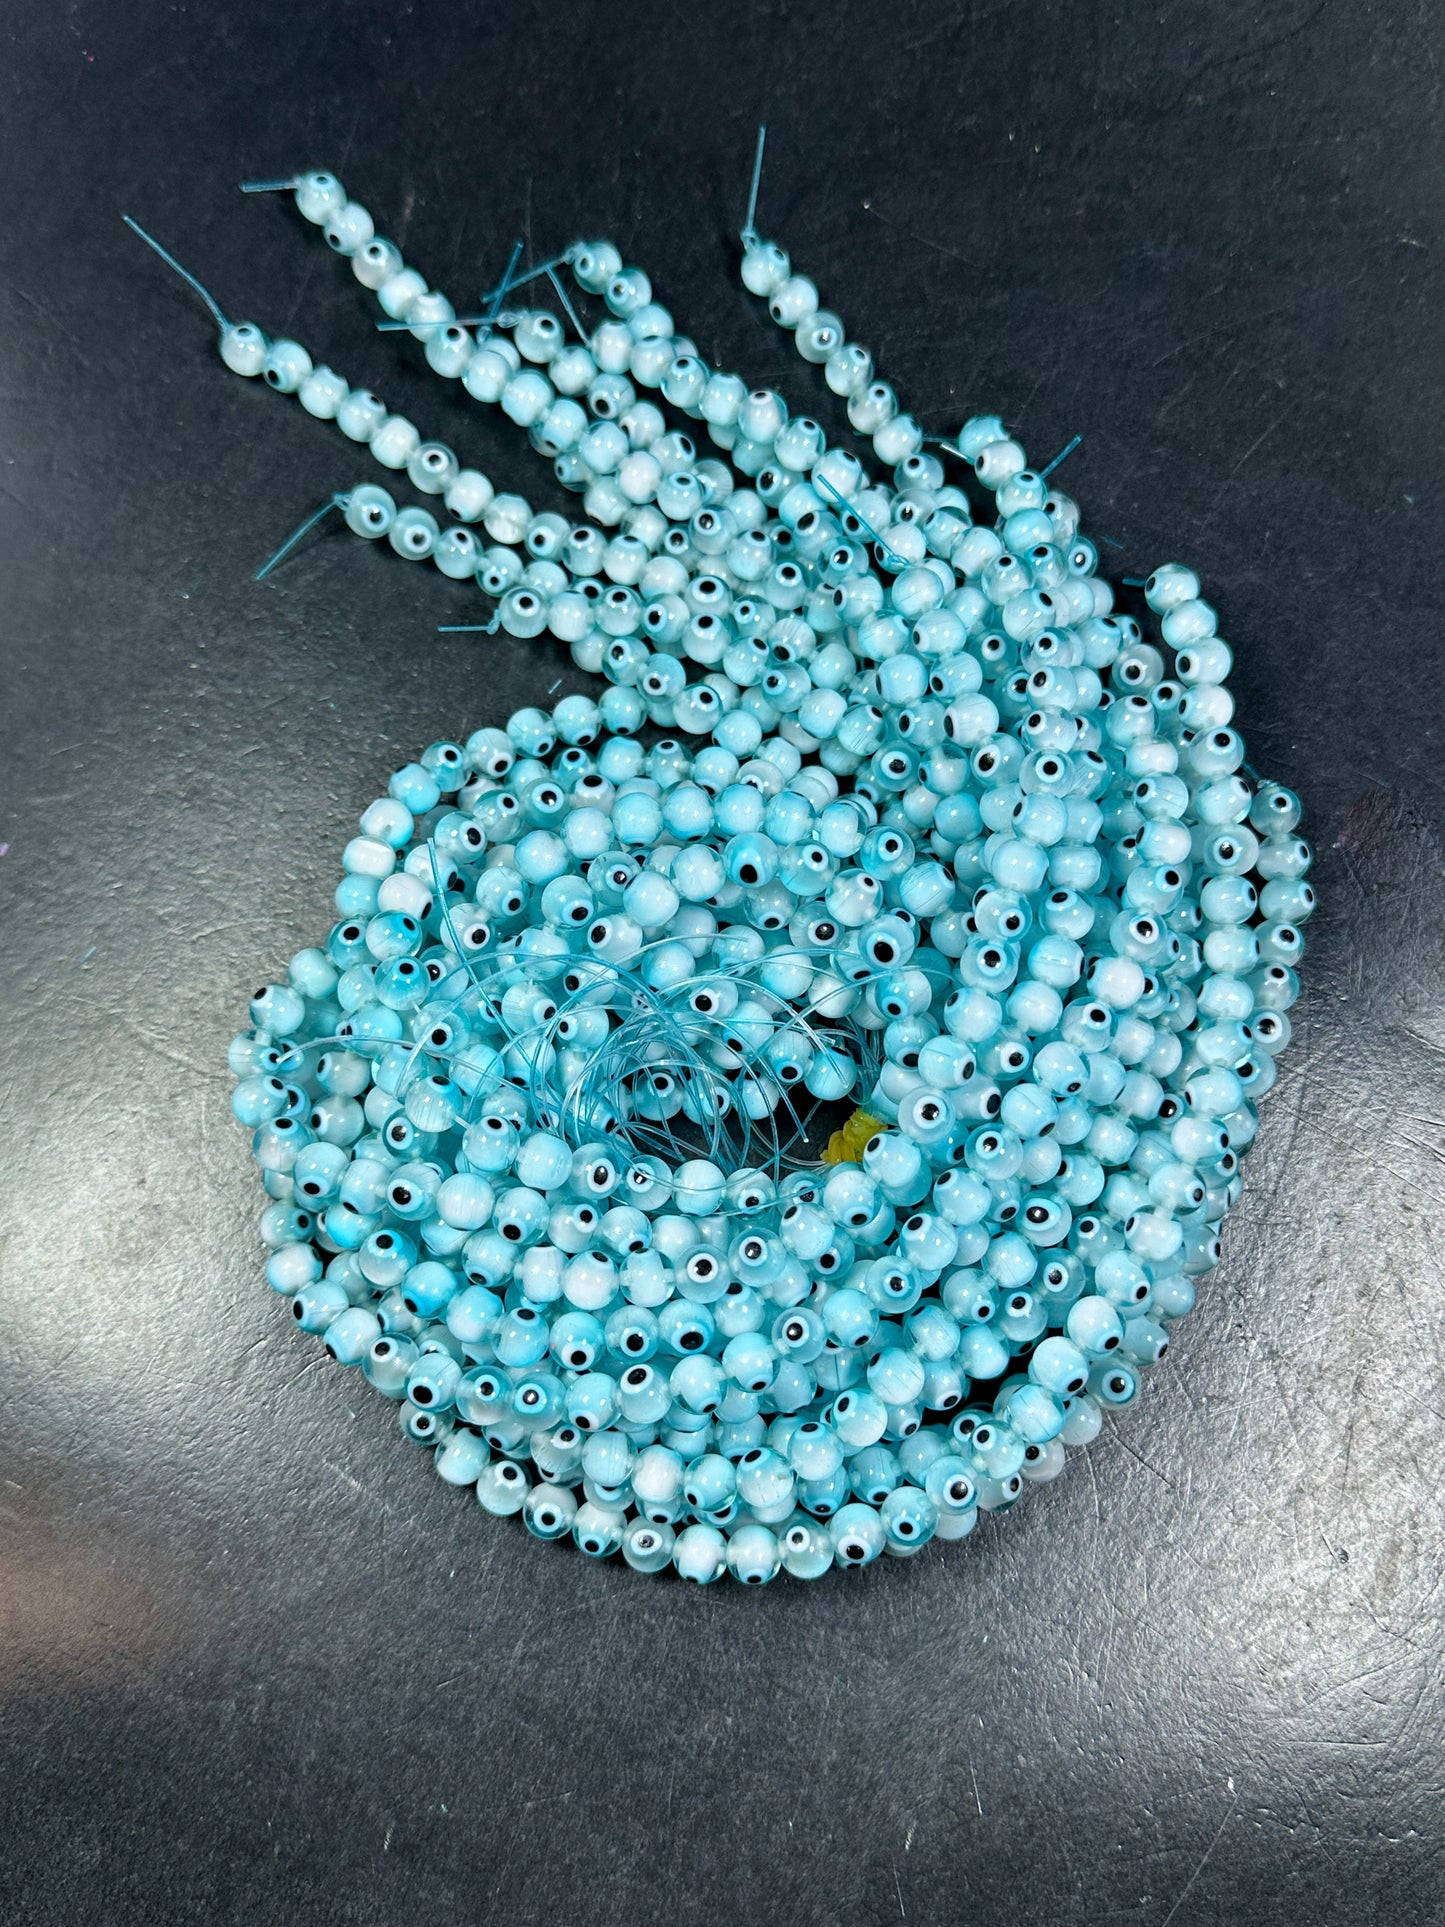 Beautiful Aqua Blue Evil Eye Glass Beads 8mm Round Beads, Beautiful Aqua Blue Clear Evil Eye Amulet Glass Beads, Full Strand Glass Beads